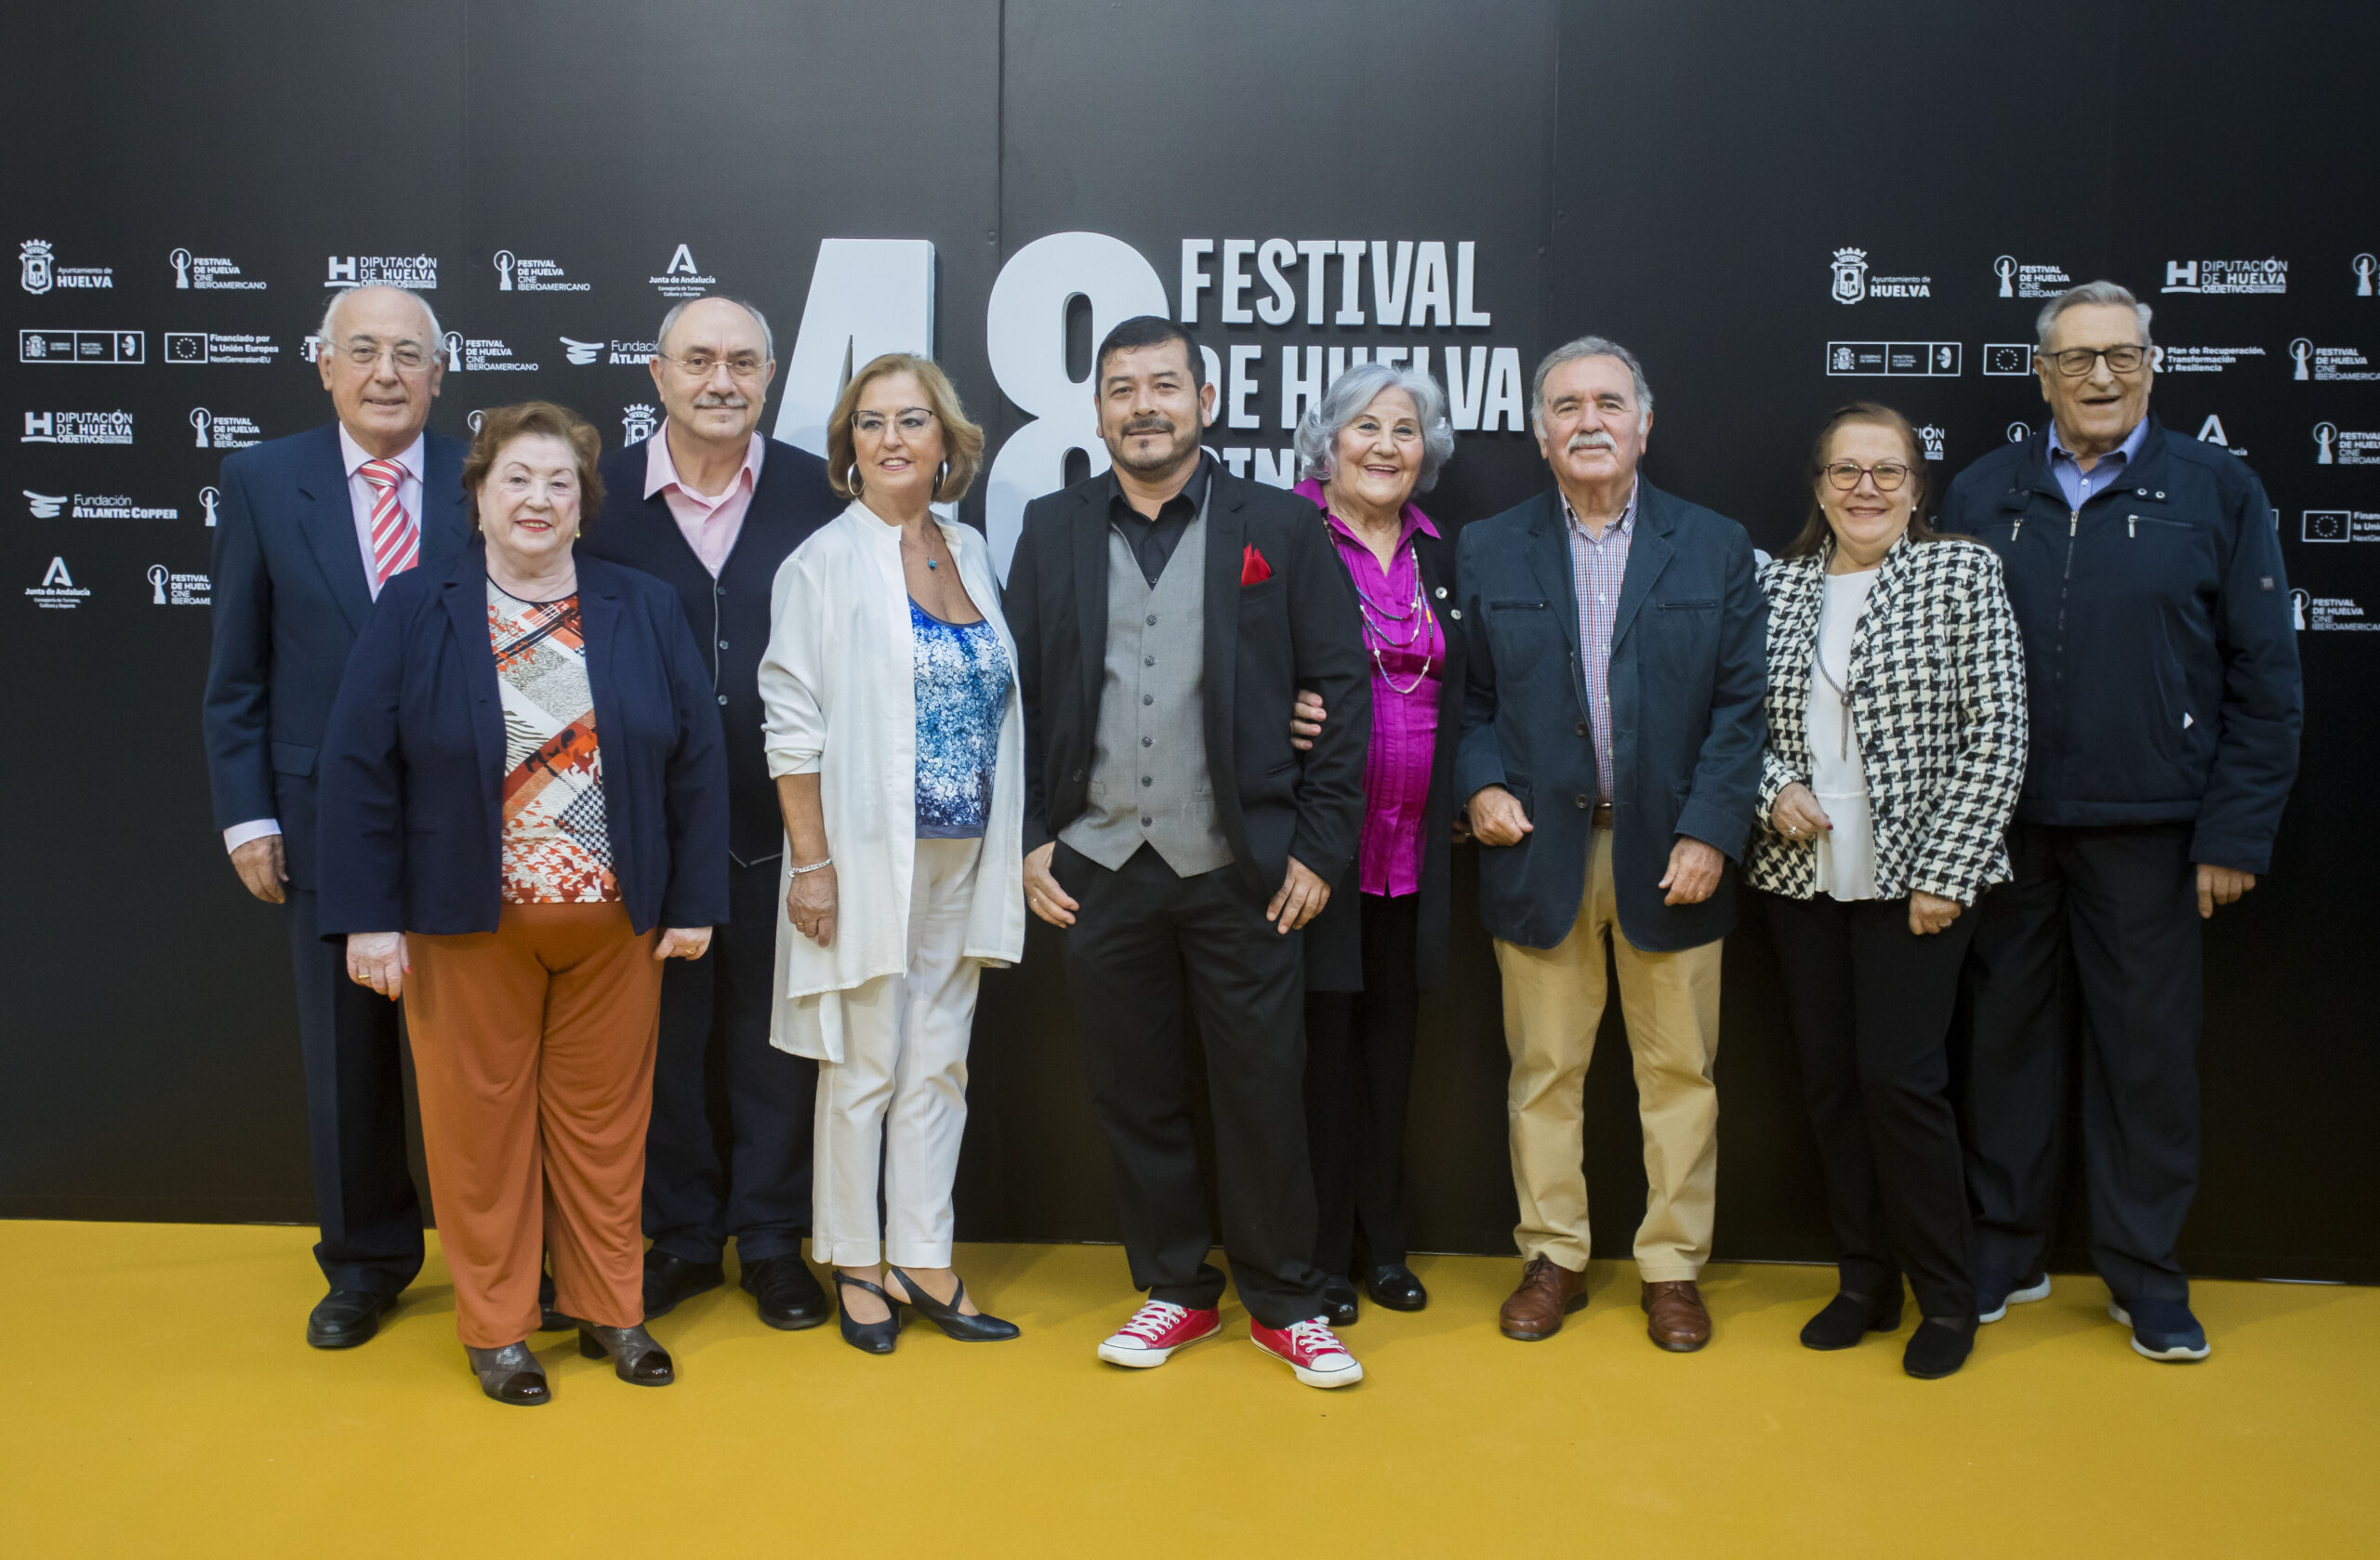 La asociación de pensionistas y jubilados Andariego de Huelva, triunfa en  El Festival Ibeoramericano de Cine de Huelva 